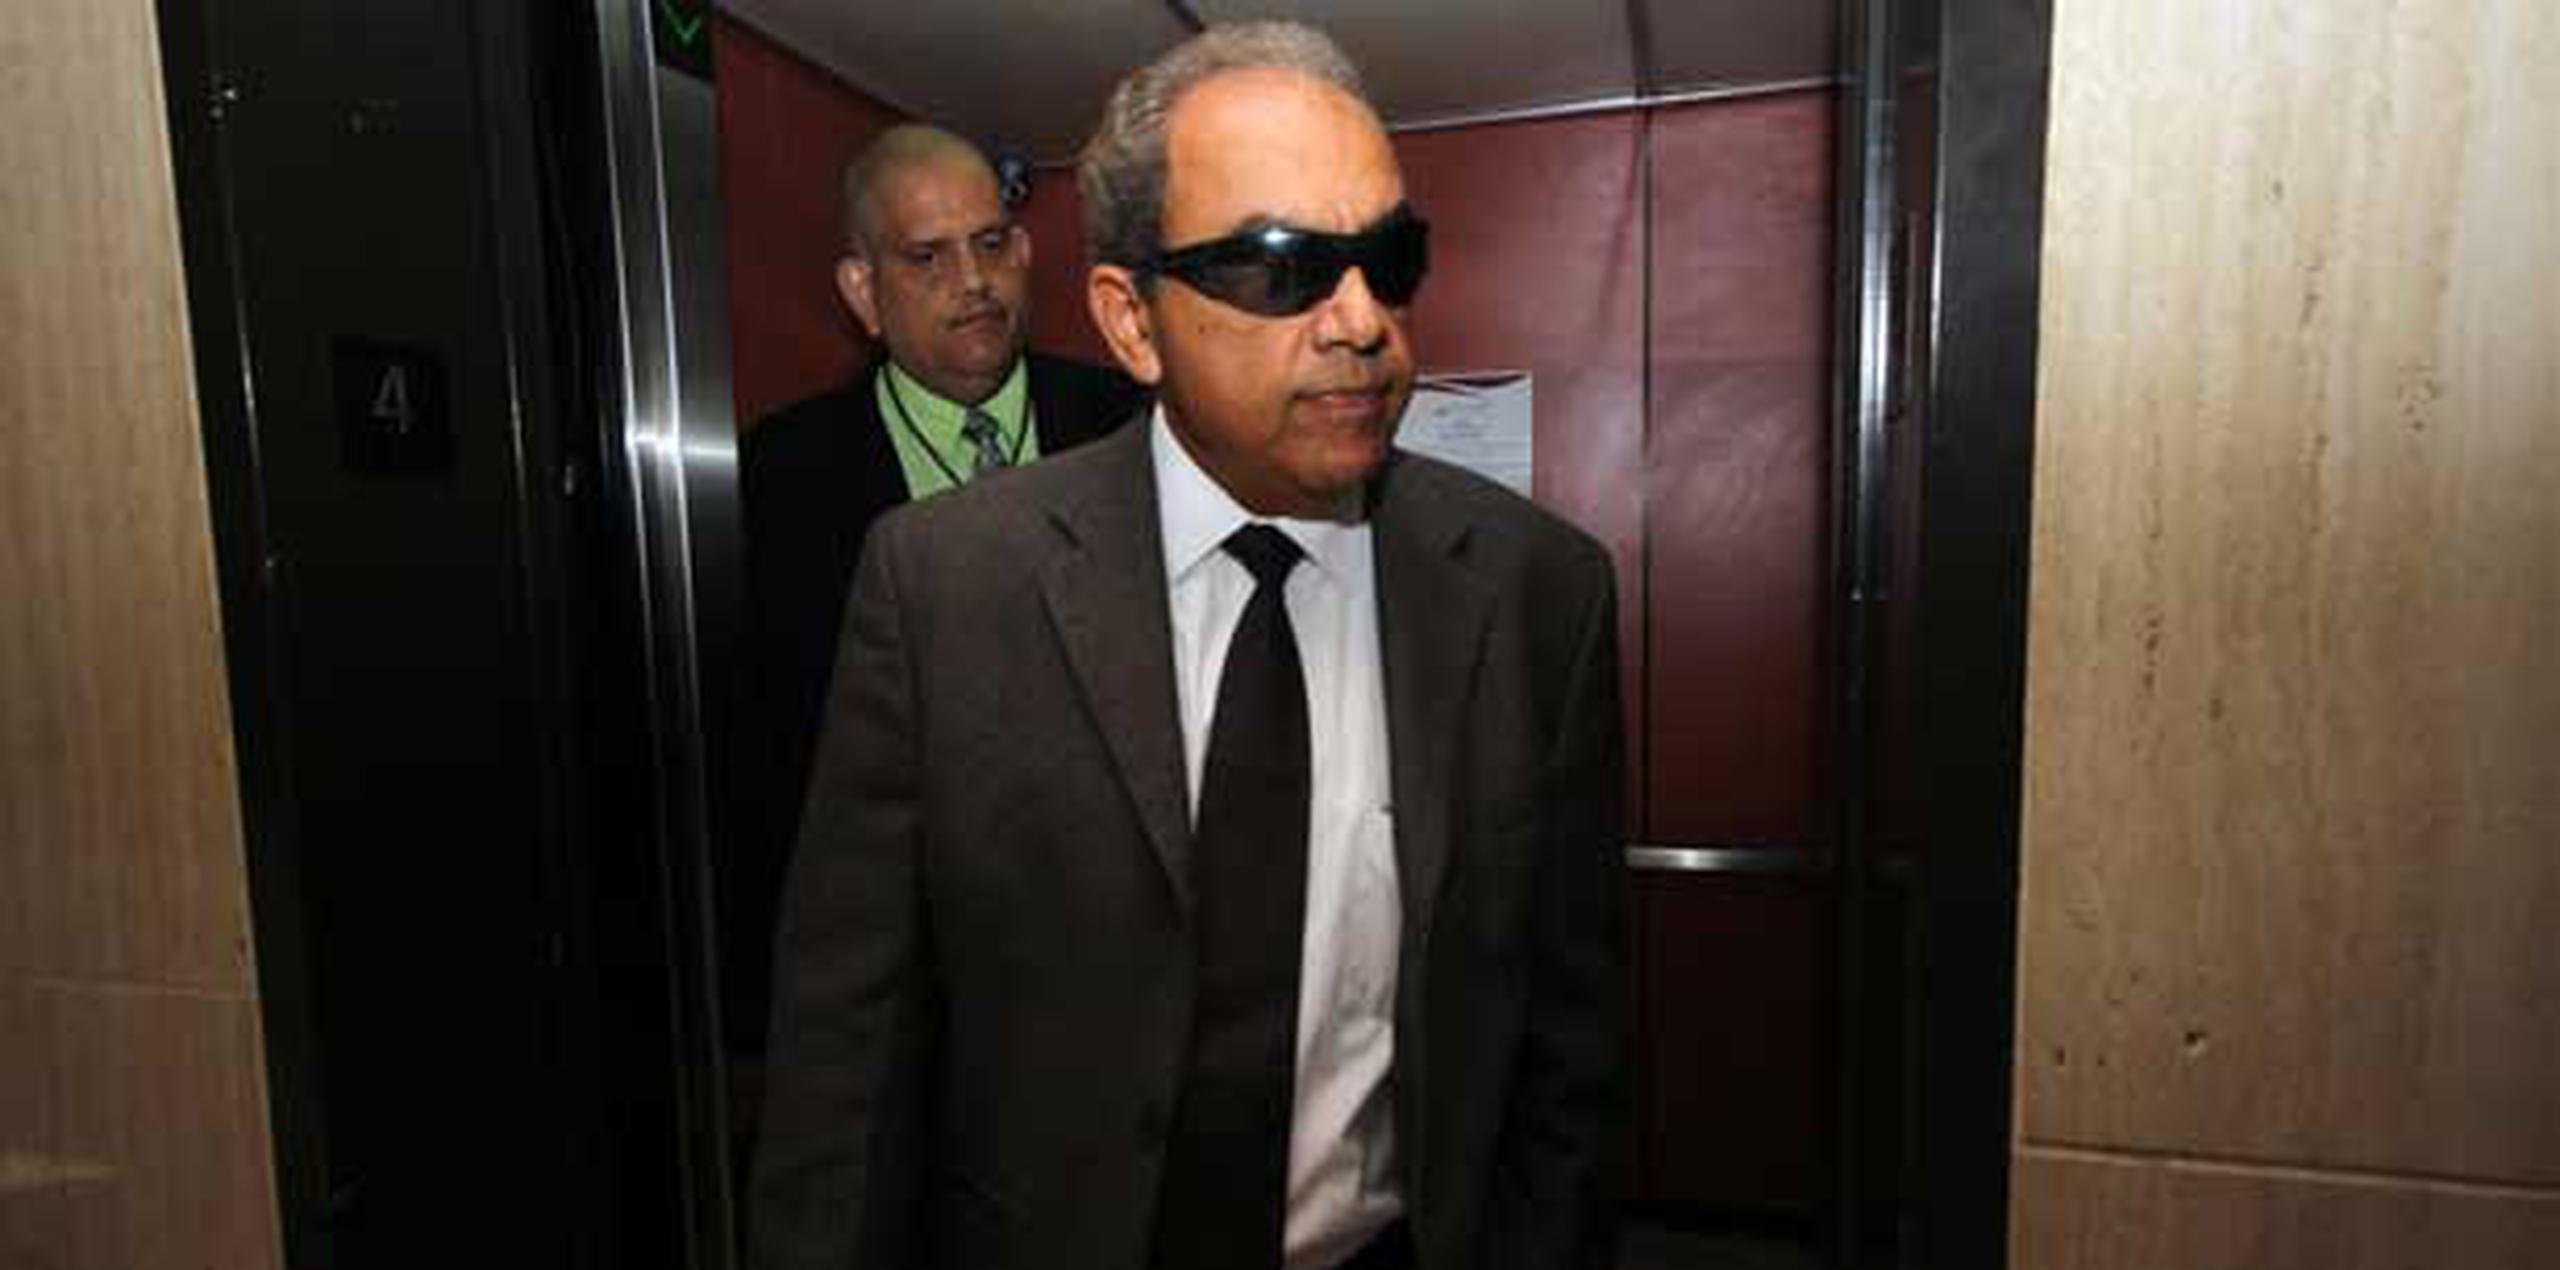 Mercado Viera insistió, a su llegada al tribunal, en que es inocente.(Nelson Reyes/ GFR Media)